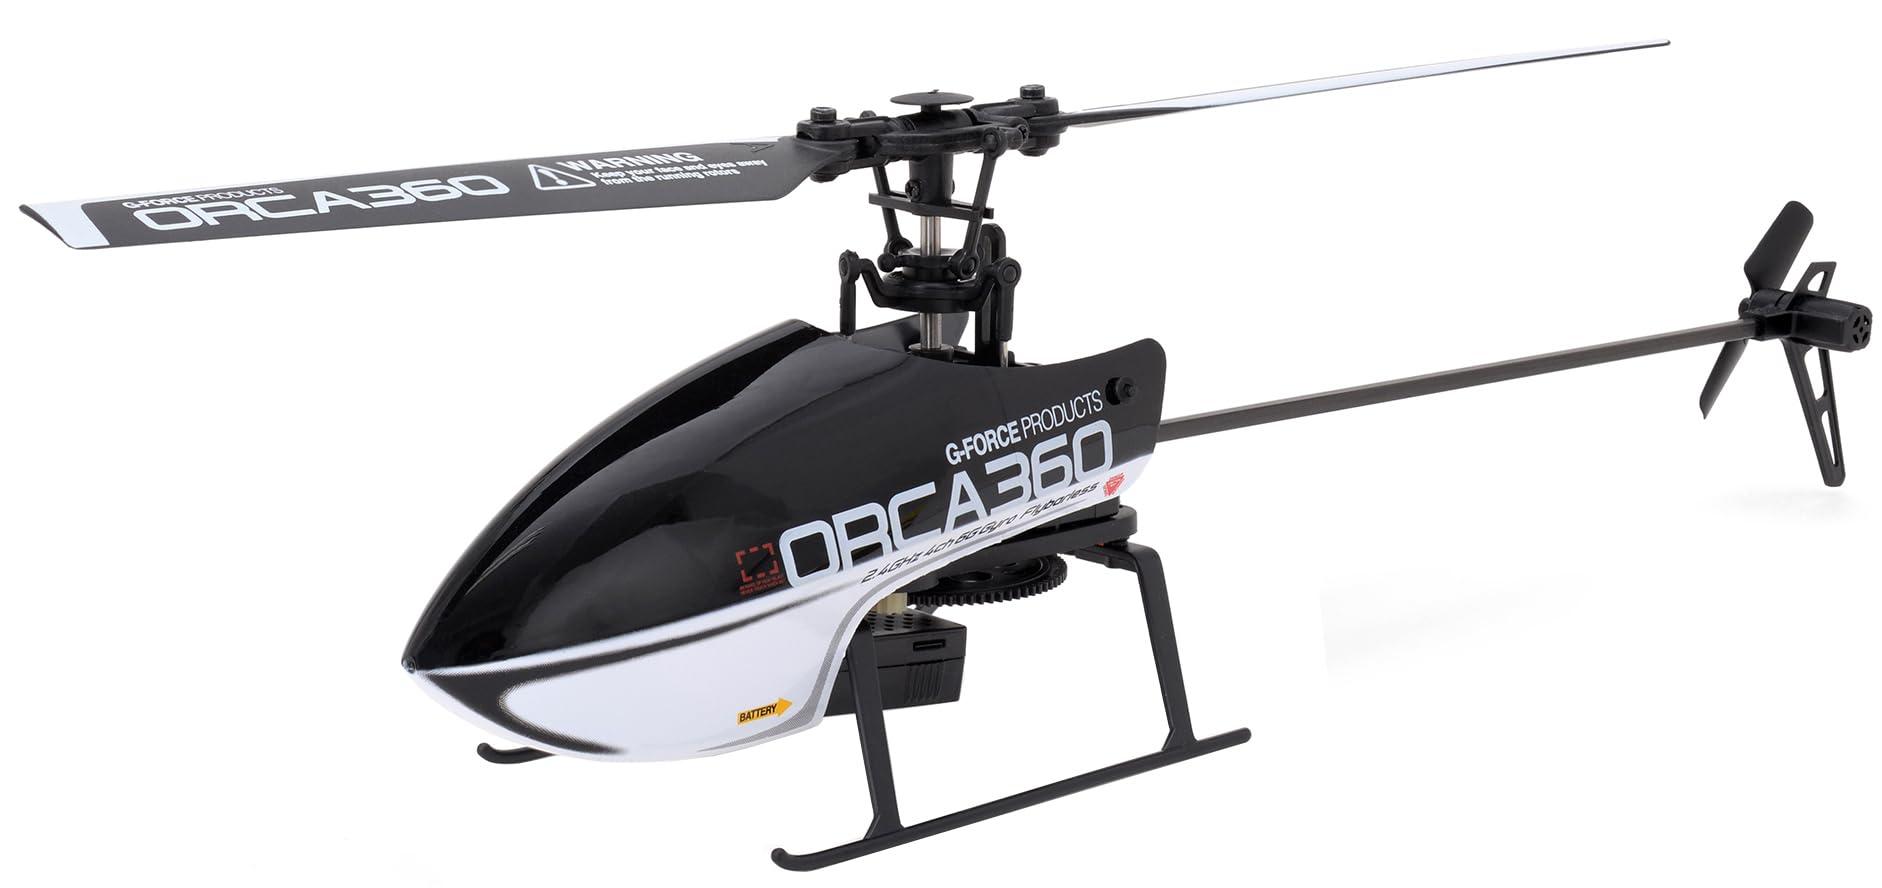 ジーフォース ORCA360 2.4GHz 4ch Altitude Hold Helicopter with 6G Gyro 電動ラジオコントロール GB022 日本正規品